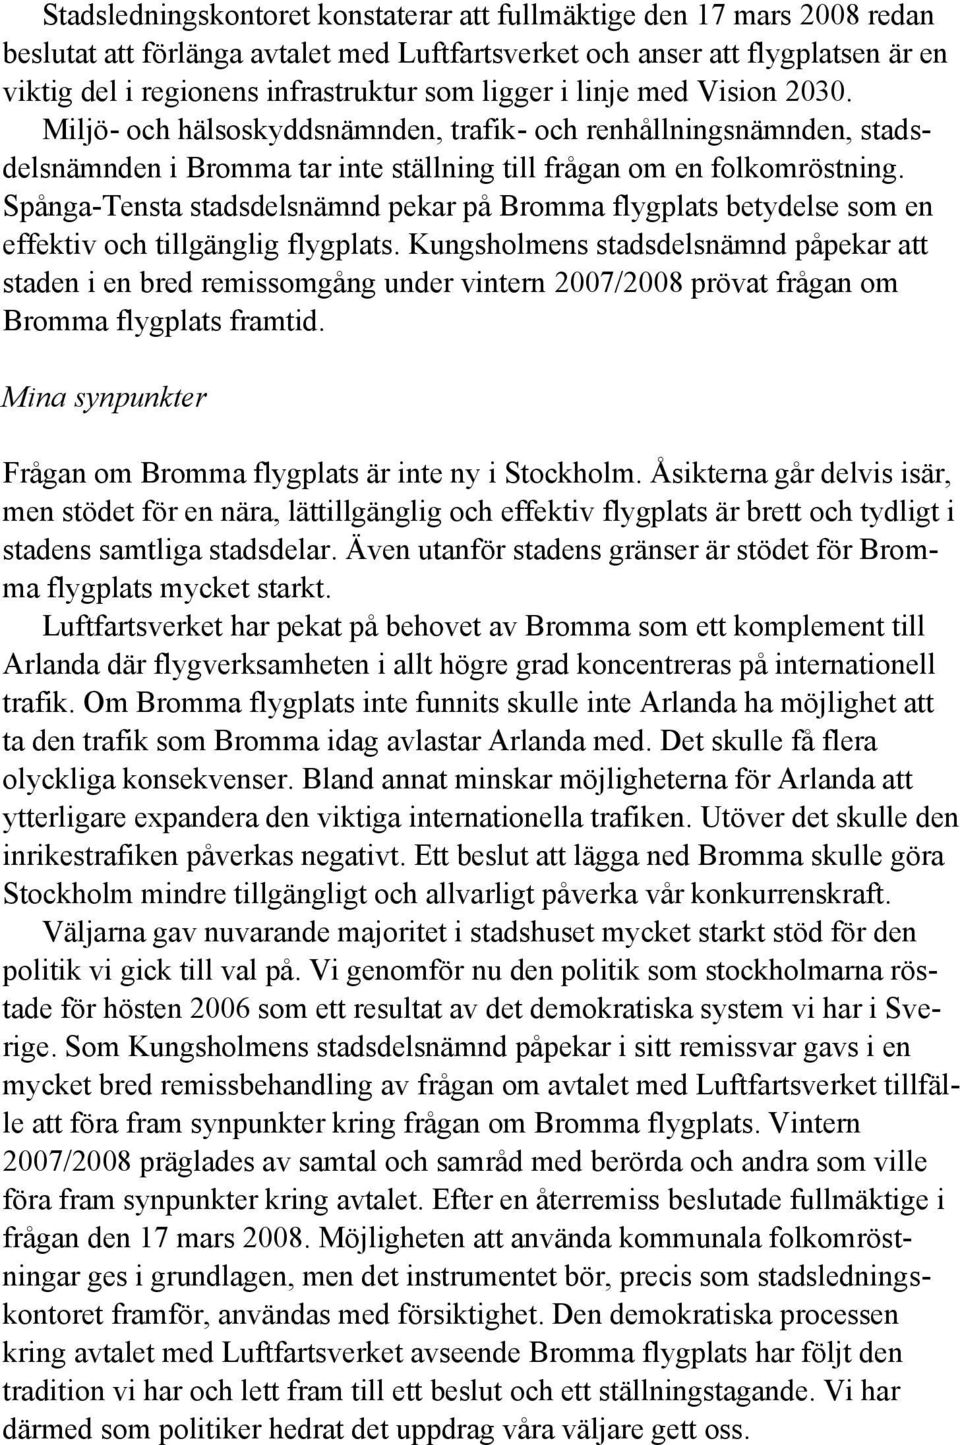 Spånga-Tensta stadsdelsnämnd pekar på Bromma flygplats betydelse som en effektiv och tillgänglig flygplats.